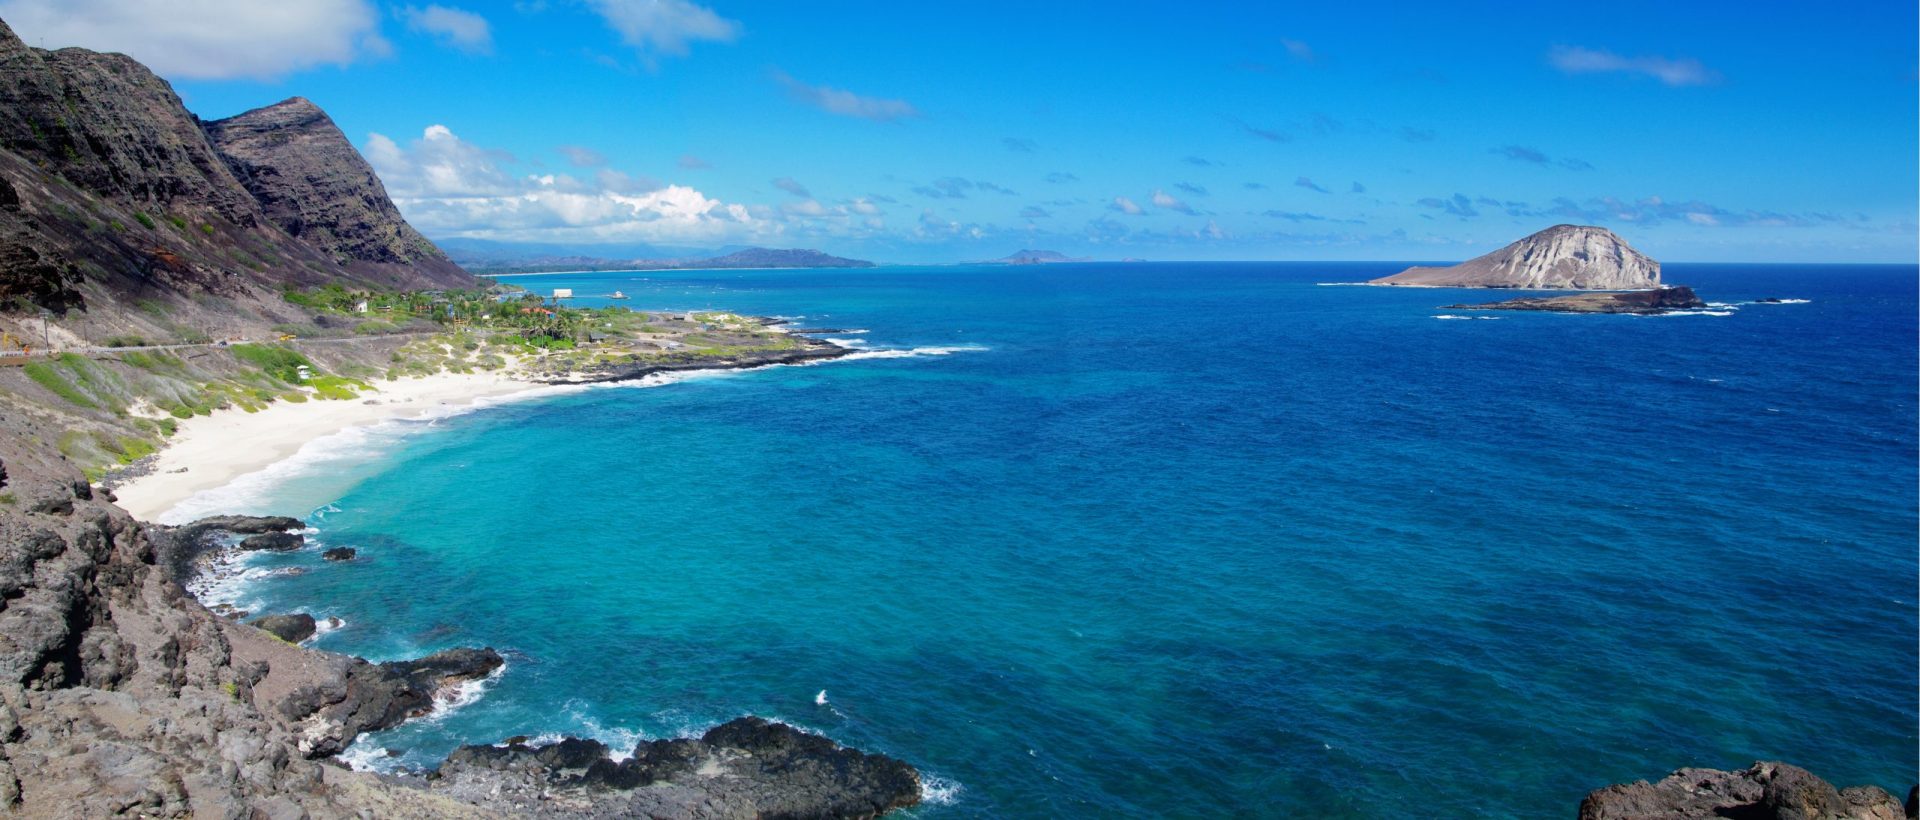 Helicóptero de turismo desaparece com sete pessoas a bordo no Havai